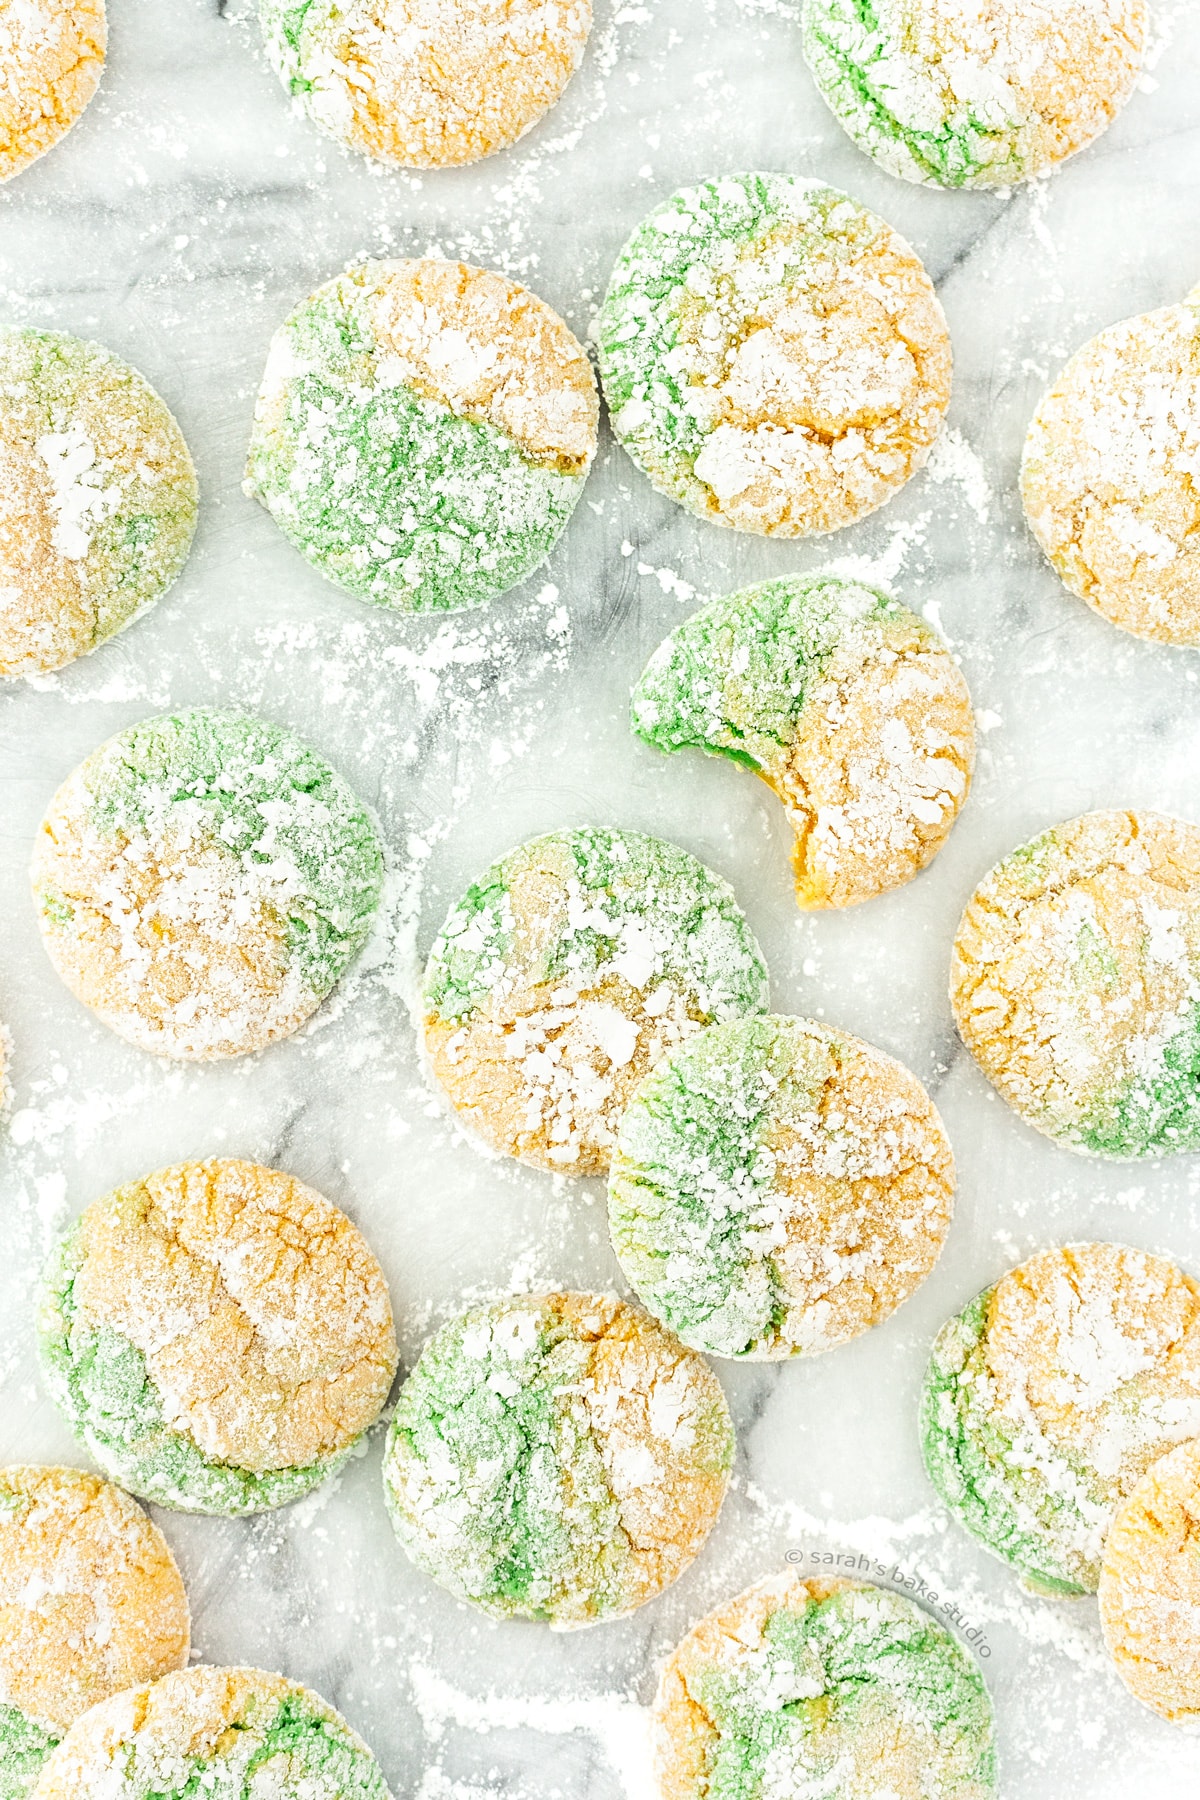 A flatlay of Green Bay Packers Crinke Cookies.